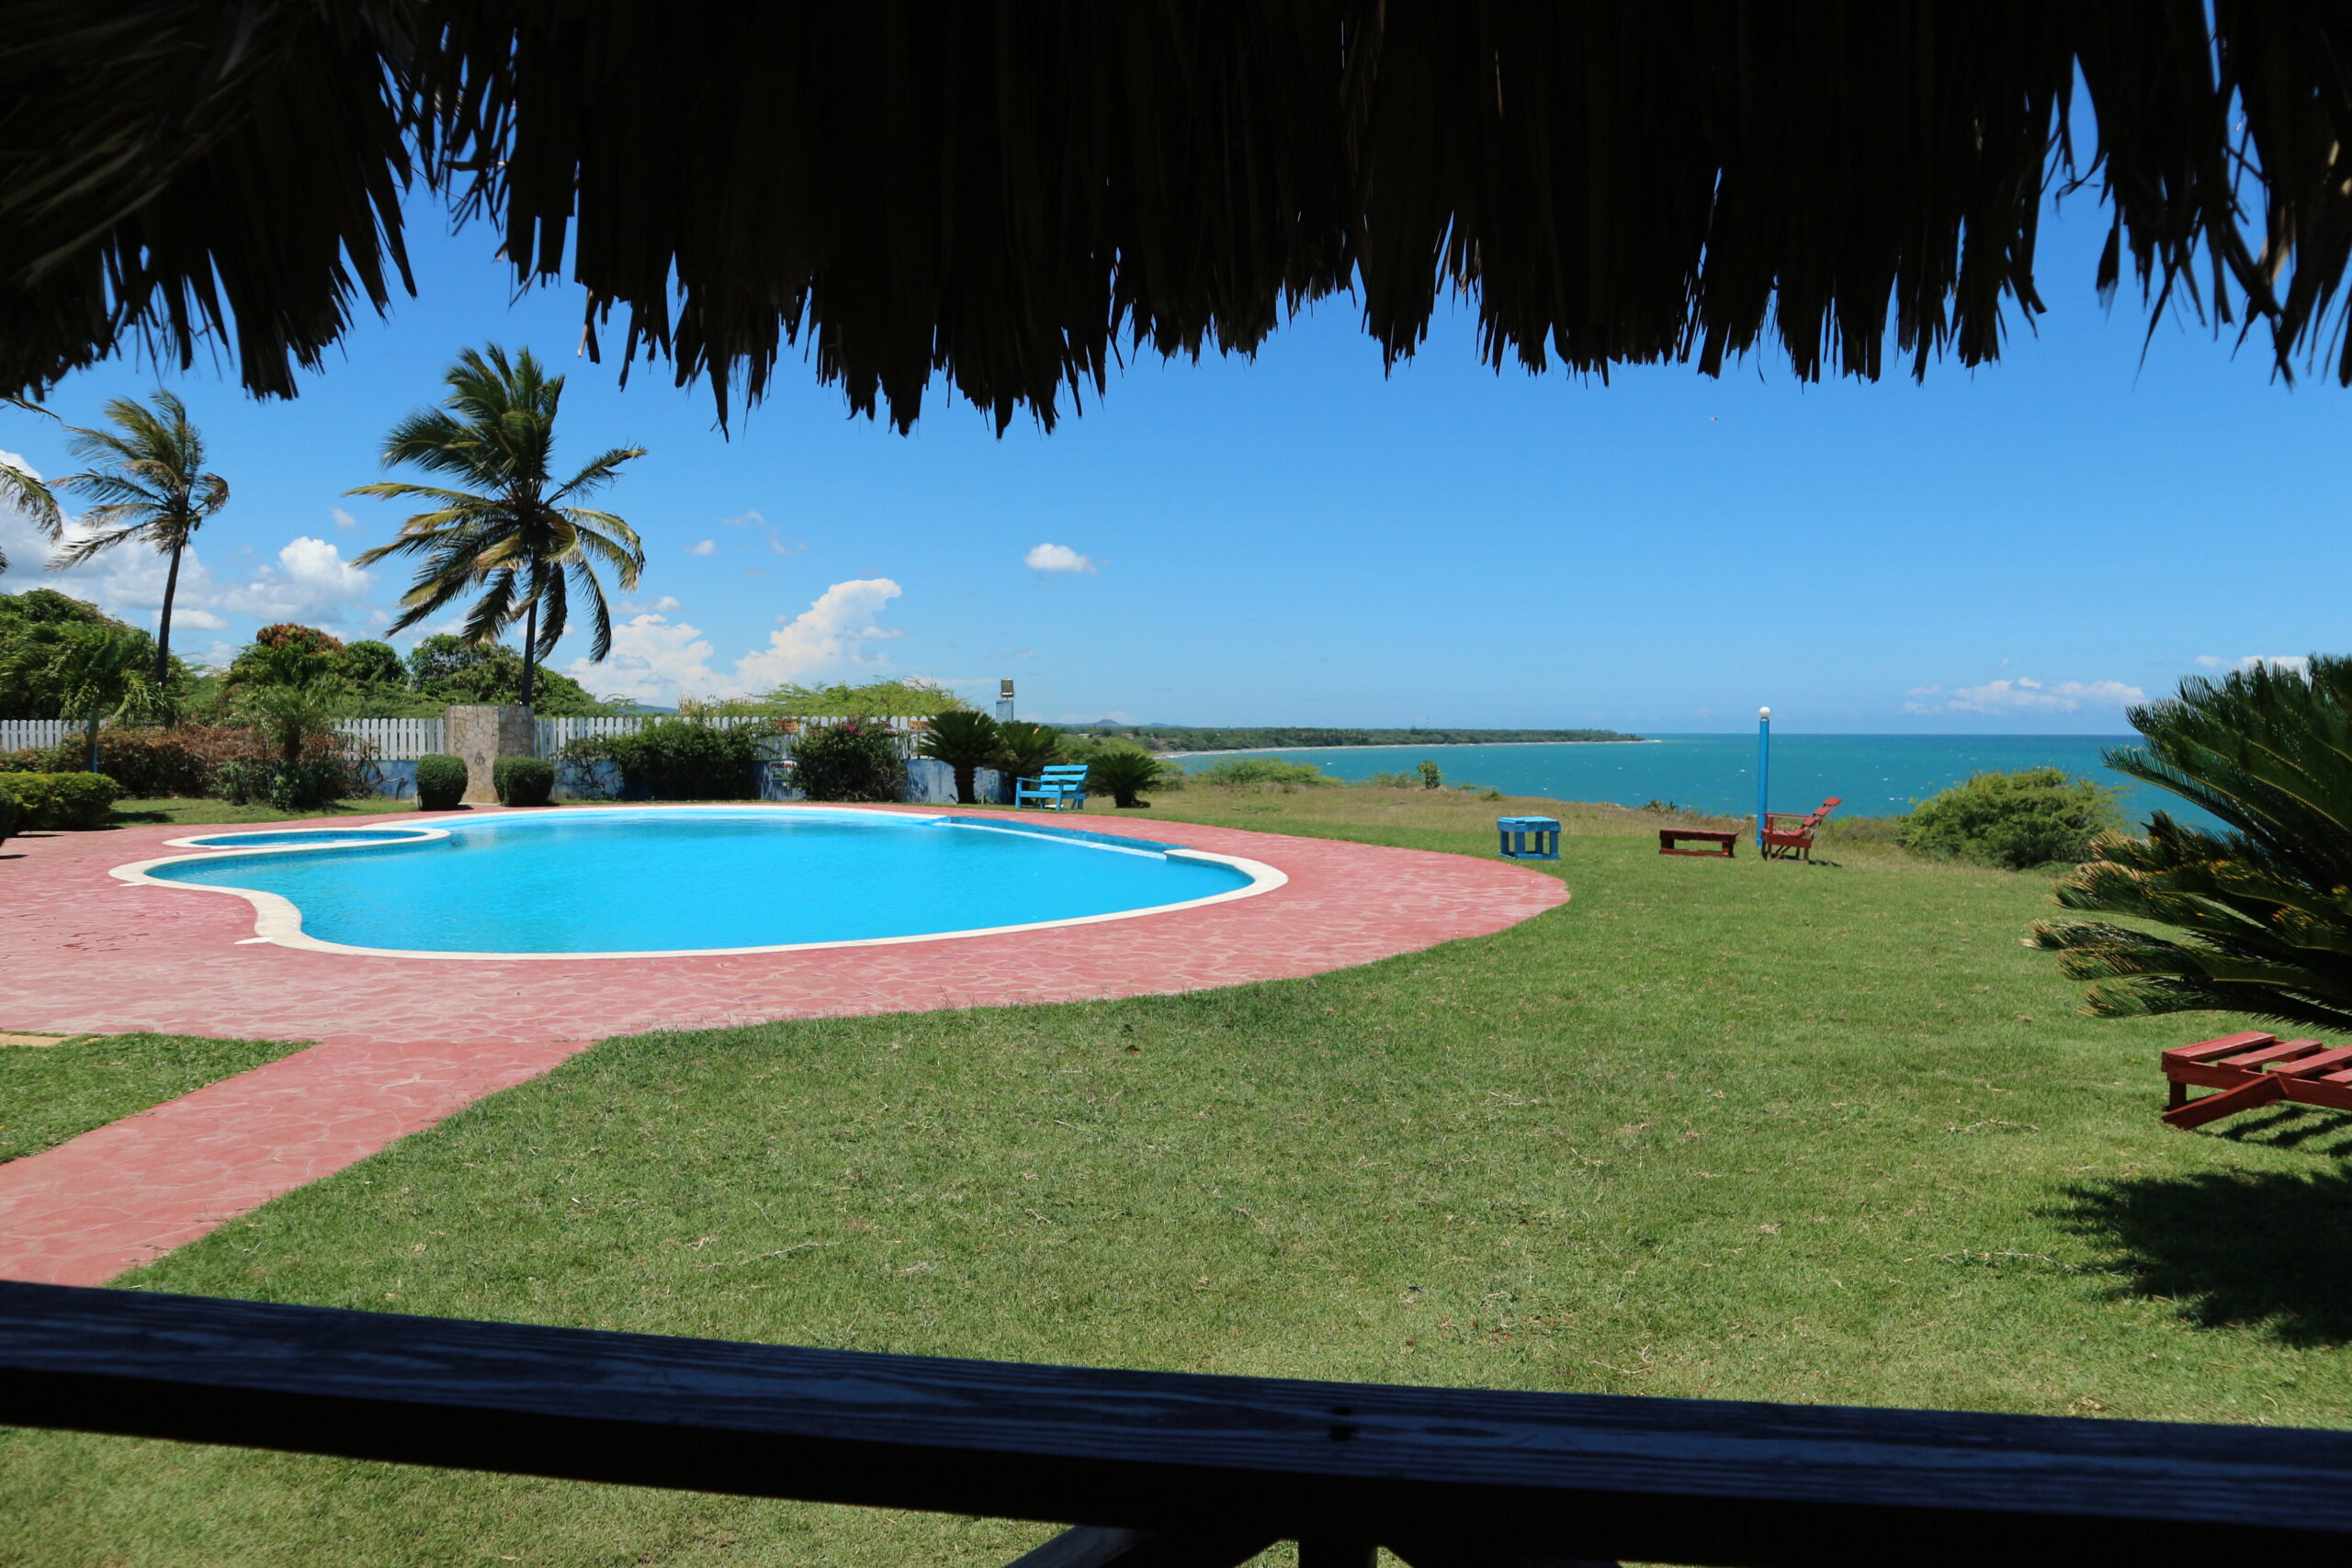 Het zwembad bij het restaurant van Campomar Matanzas.